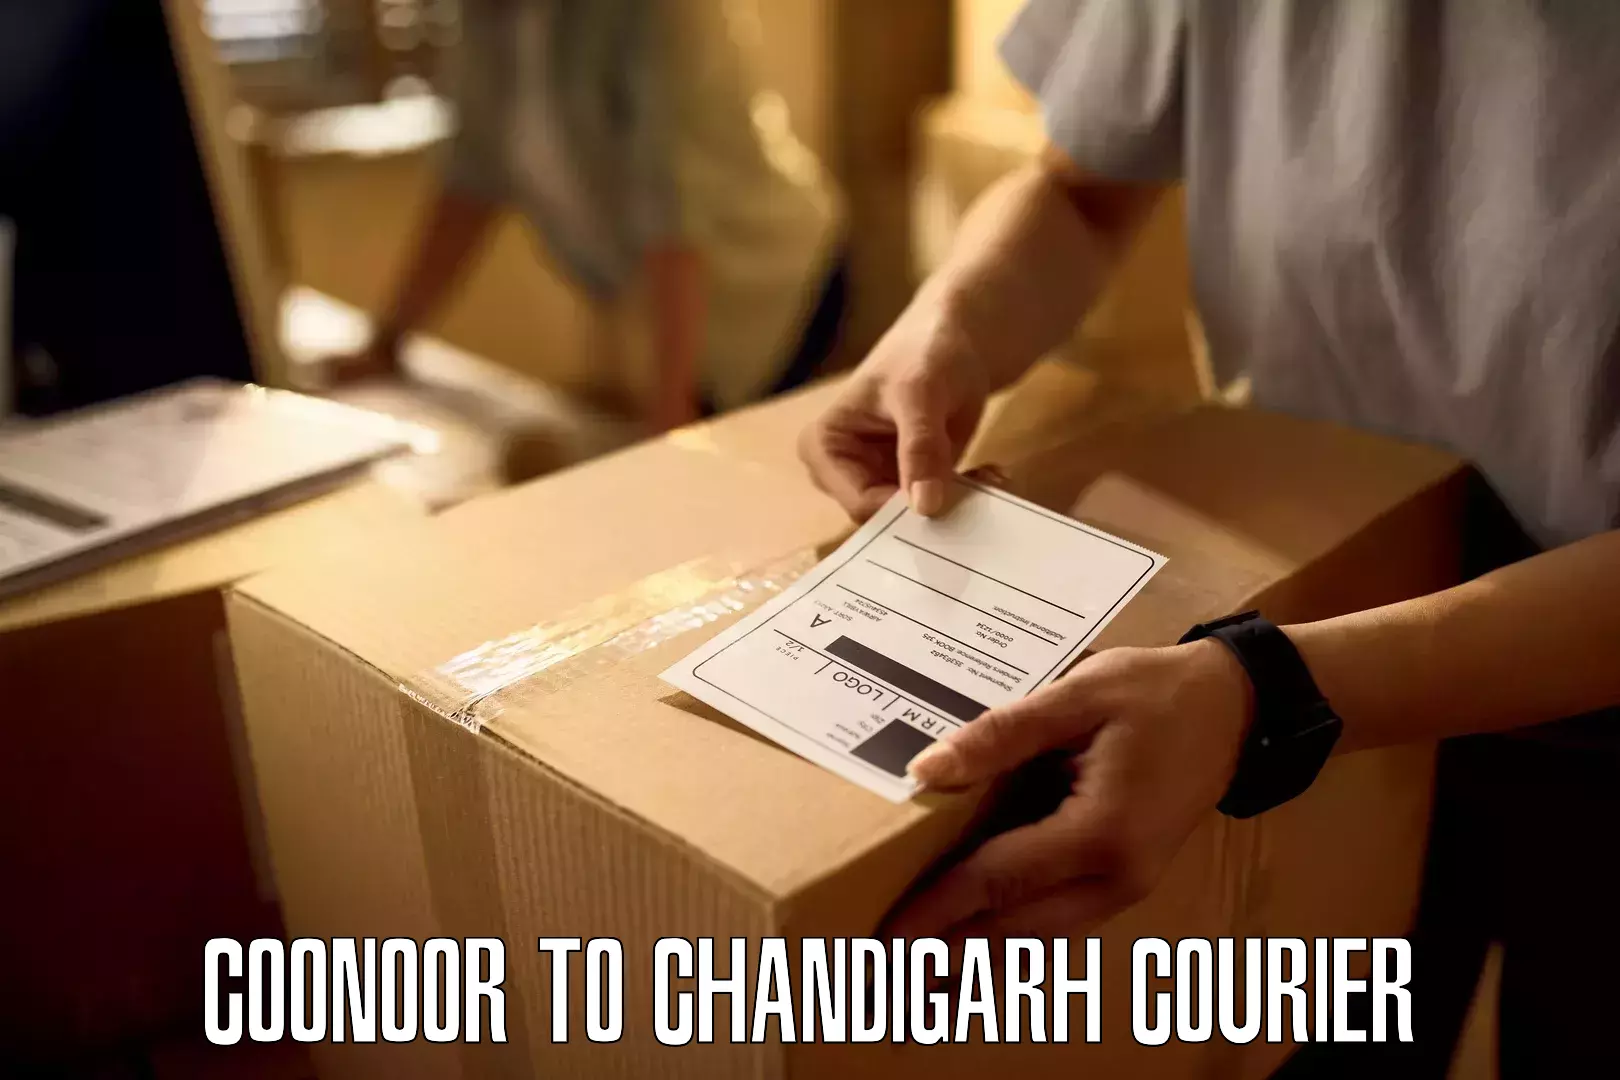 Ocean freight courier Coonoor to Chandigarh